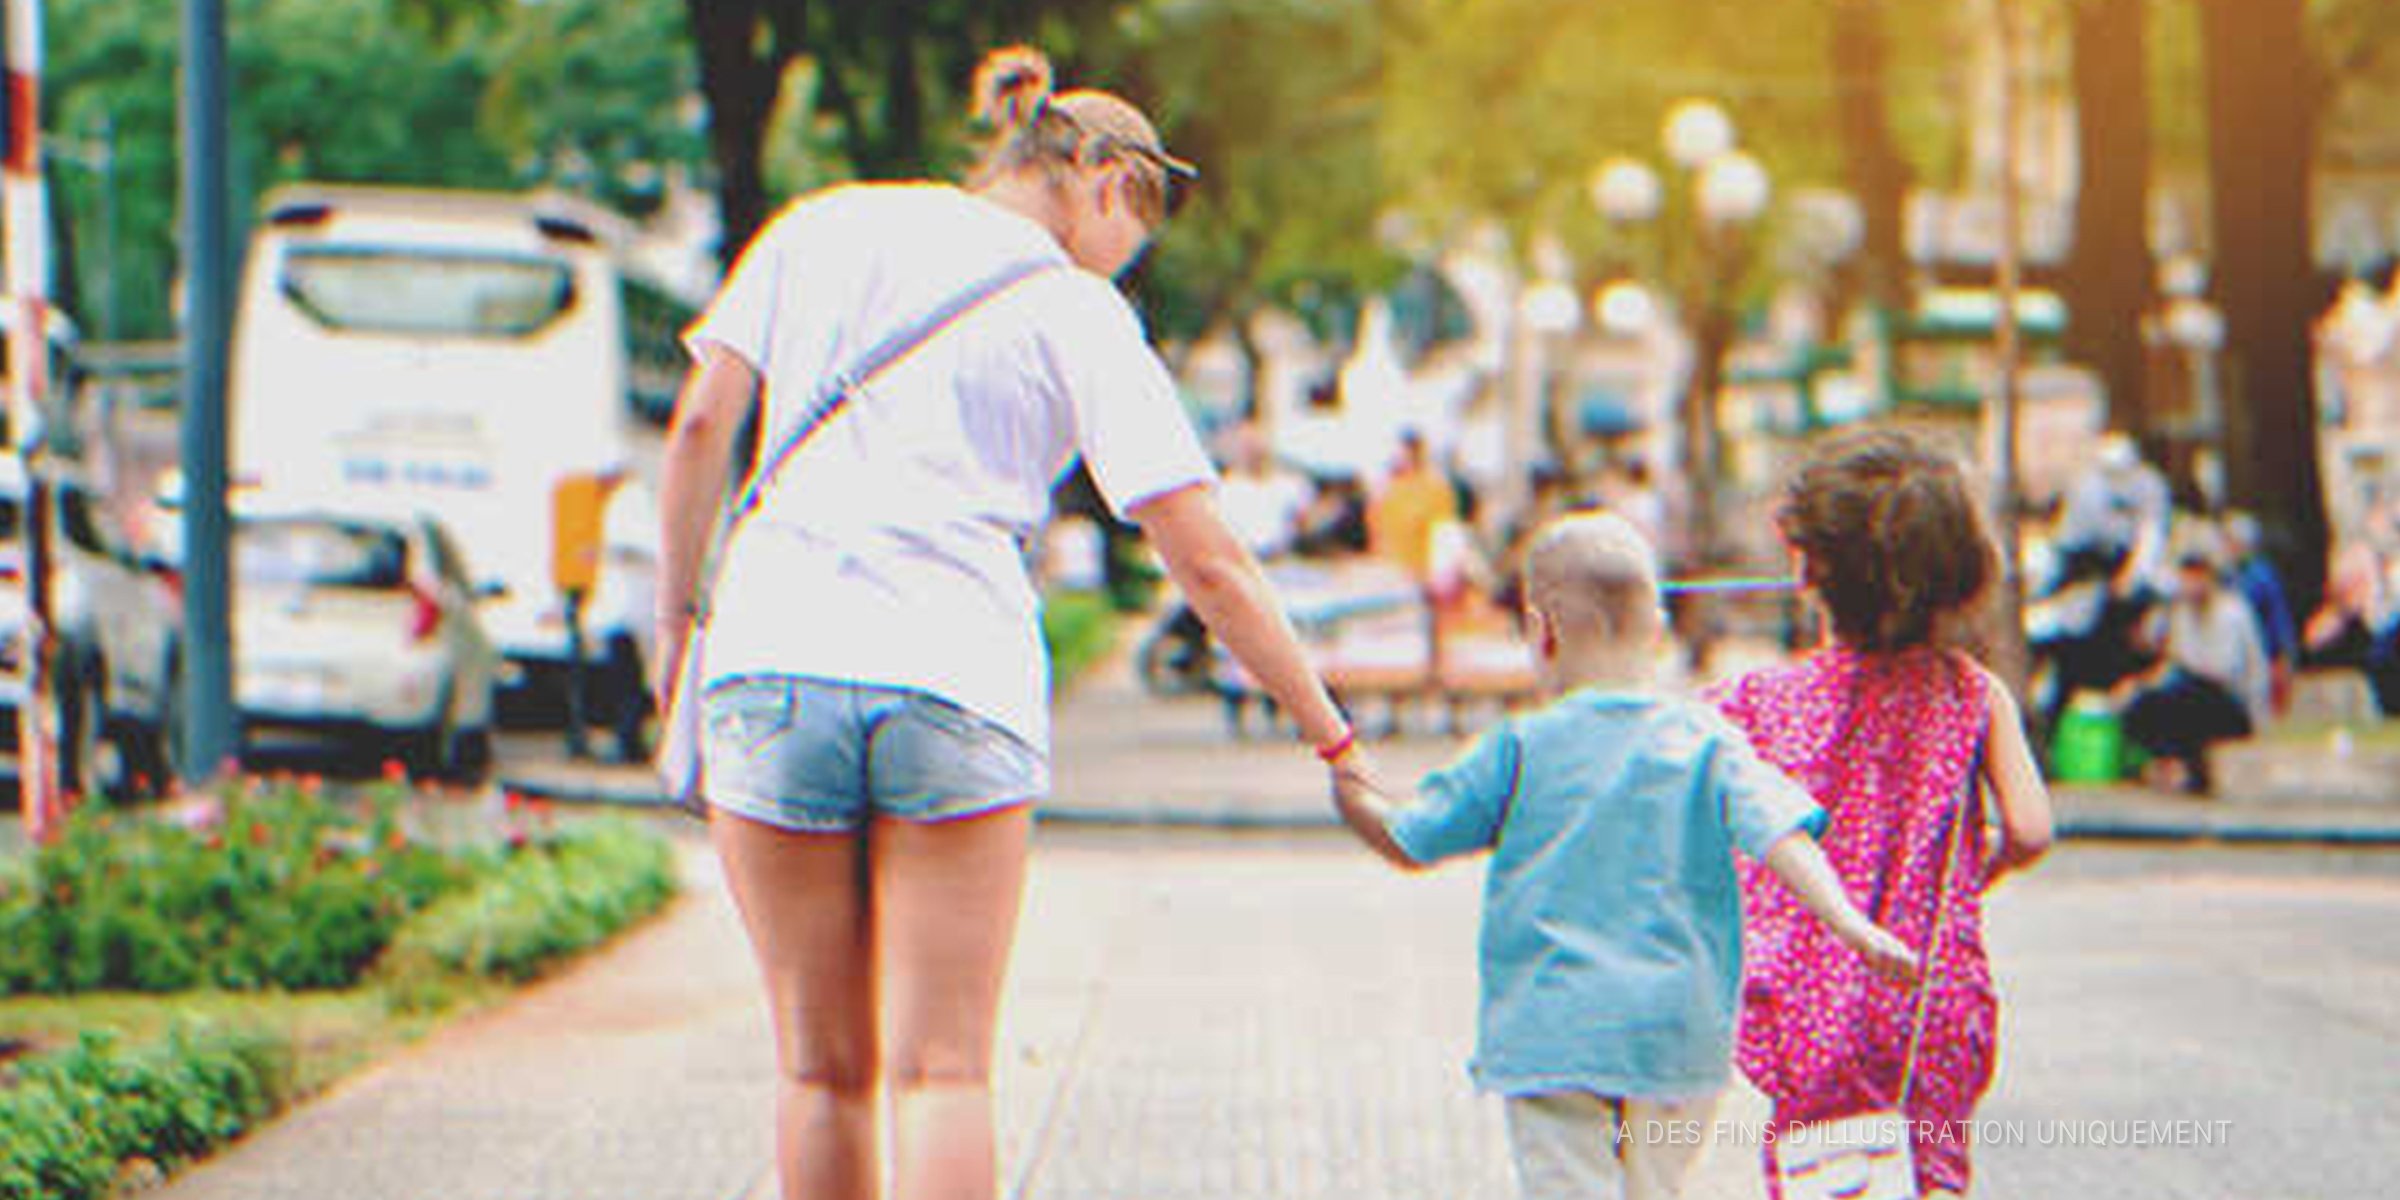 Une maman qui emmène ses enfants en promenade | Photo : Shutterstock